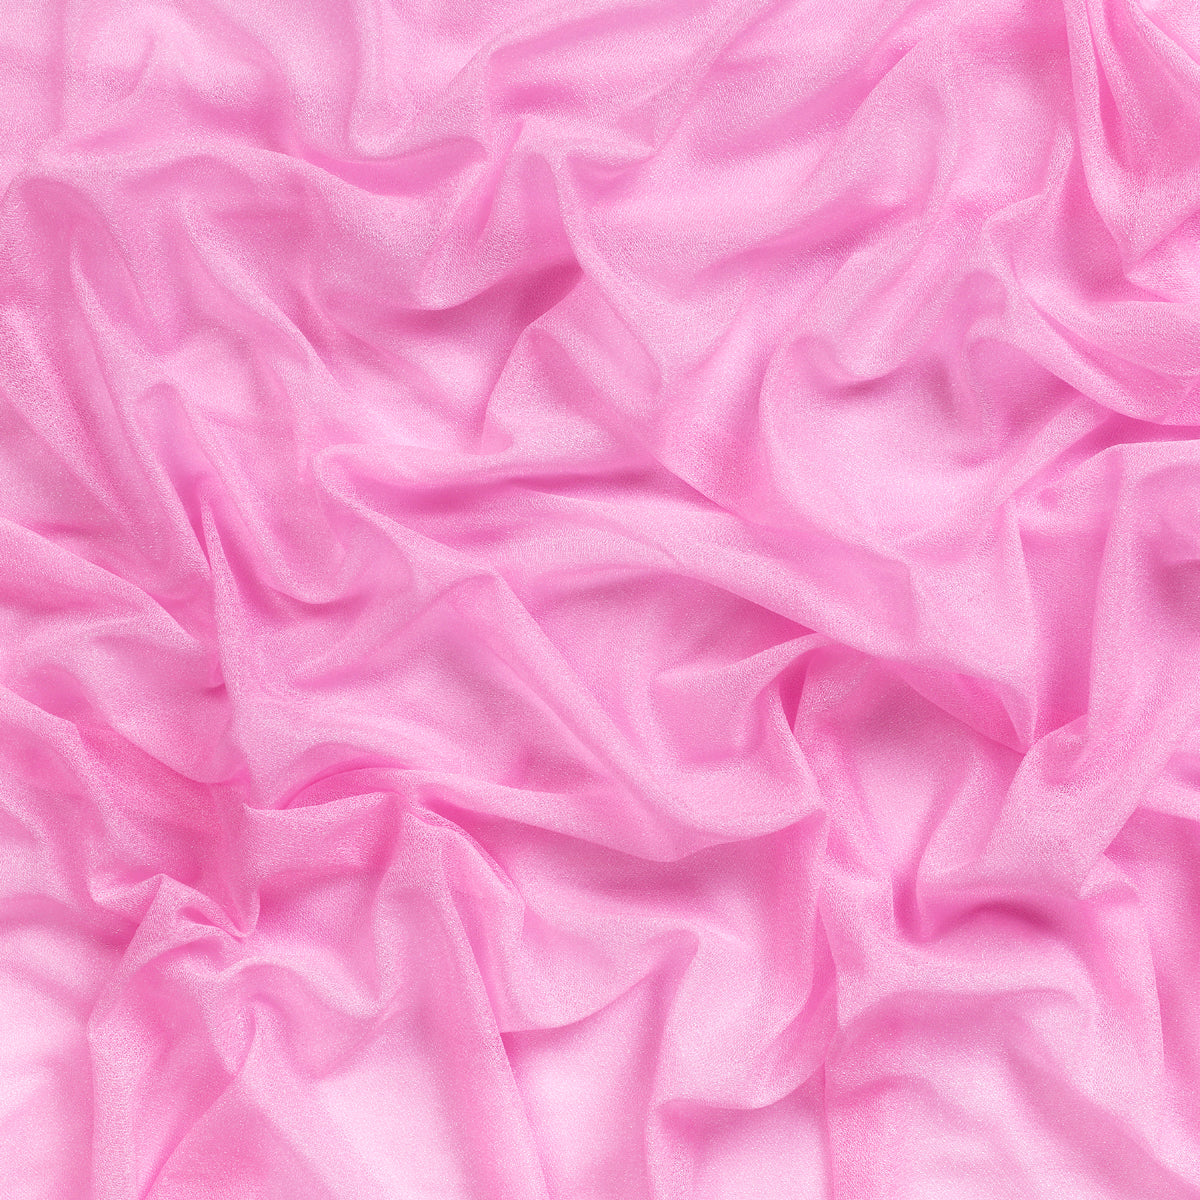 Bubblegum Pink,ab5c4d33-3350-40ba-b0c9-b8201f38888f